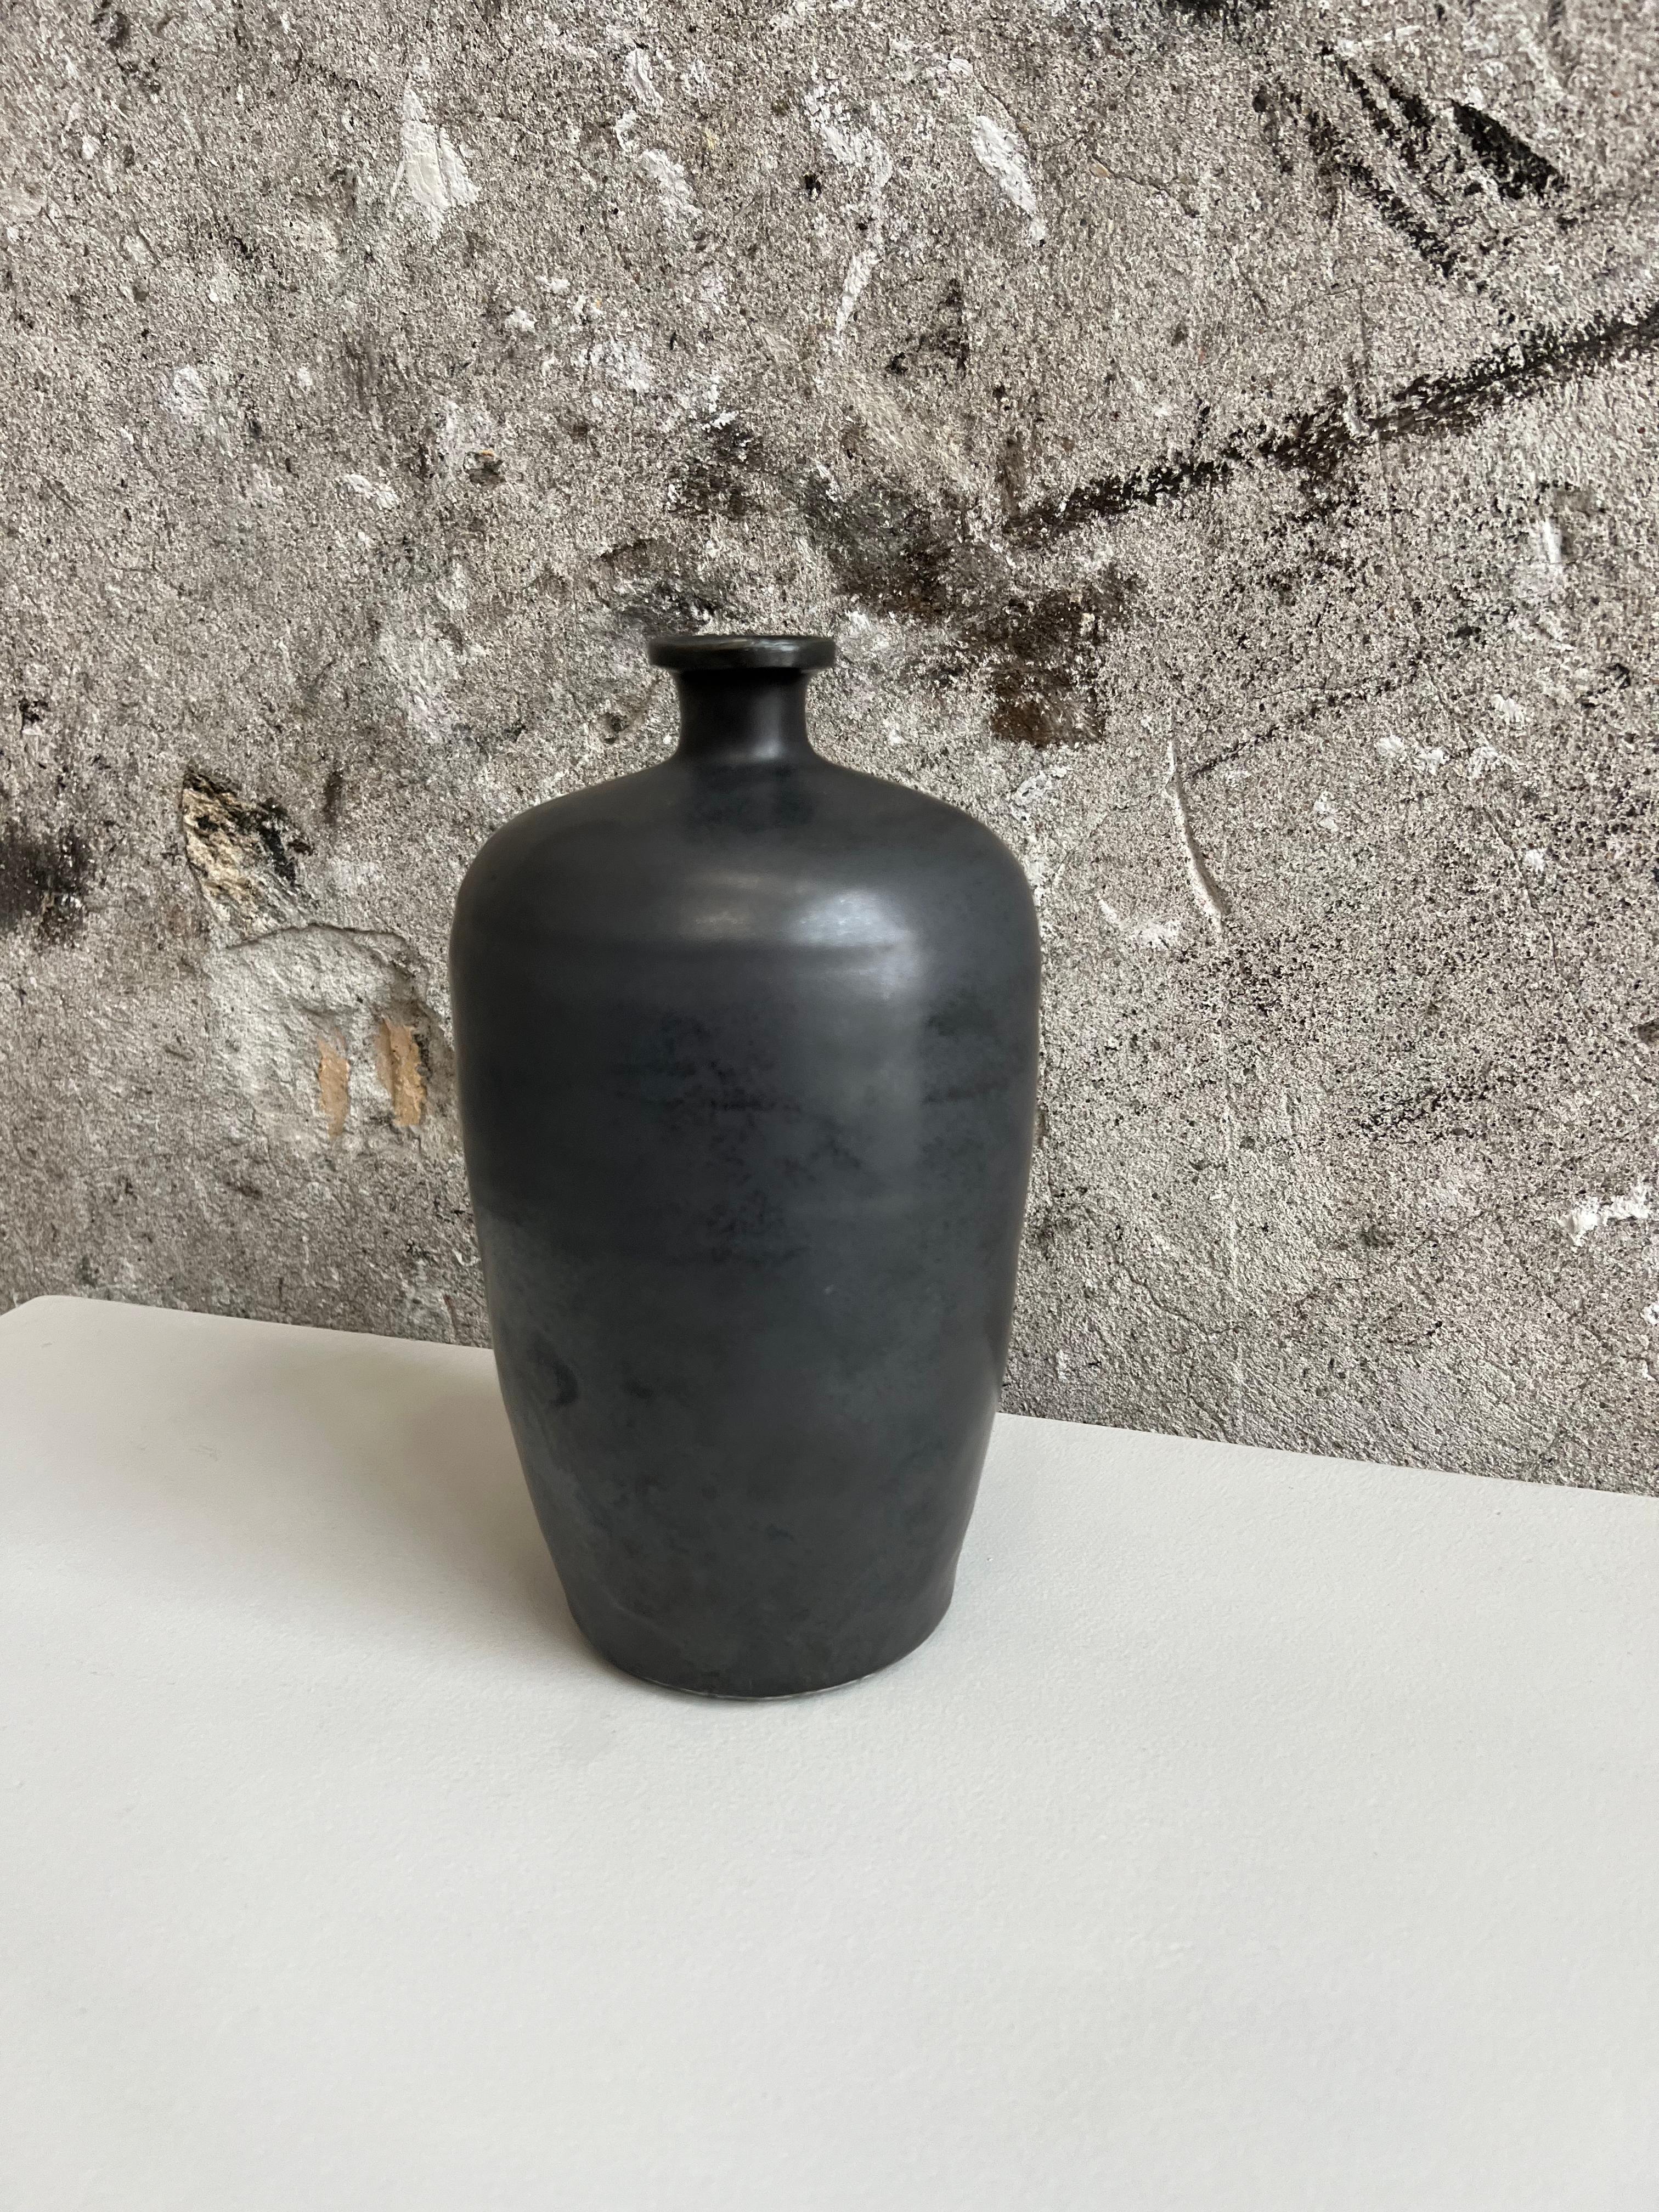 Schöne, glatte, glasierte Steingutvase in schwarzer Farbe. Diese Vase ist von traditionellen Gefäßen aus alten Filmen inspiriert und vermittelt ein antikes Gefühl mit einem modernen und minimalistischen Look.  Kann sowohl funktional als auch